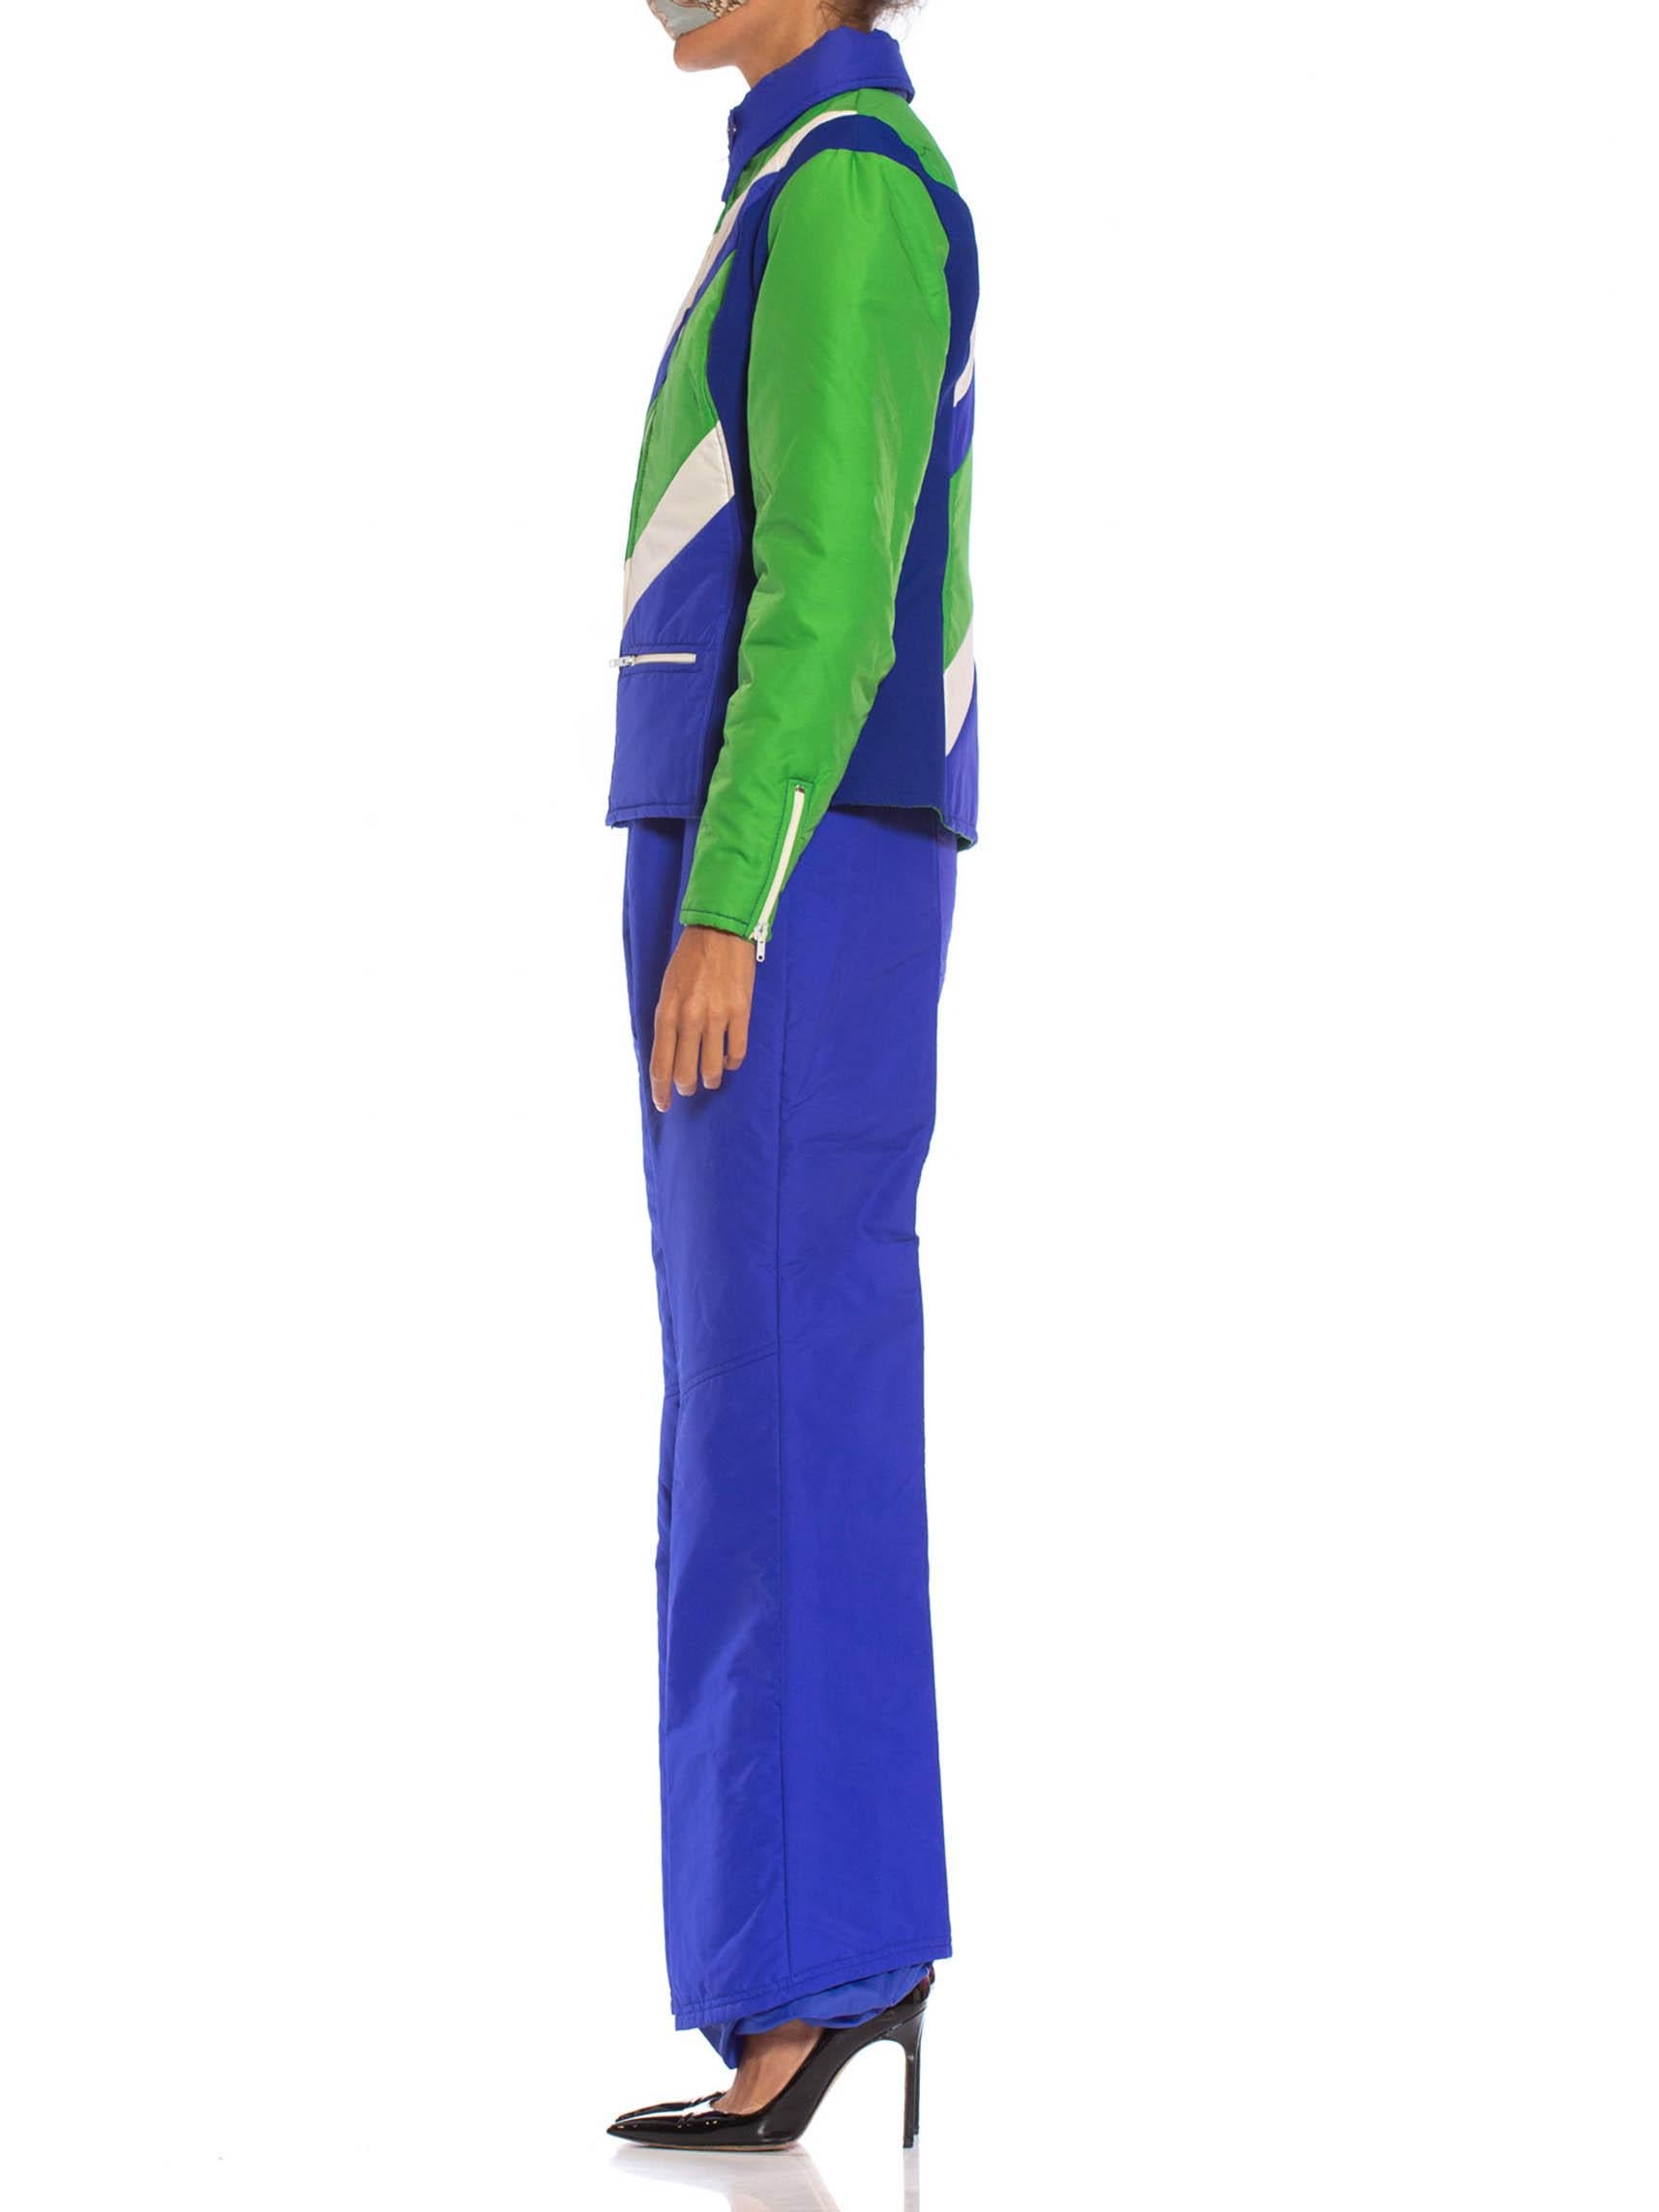 Women's 1970S Blue & Green Nylon Austrian Mod Ski Jacket Pants Ensemble For Sale